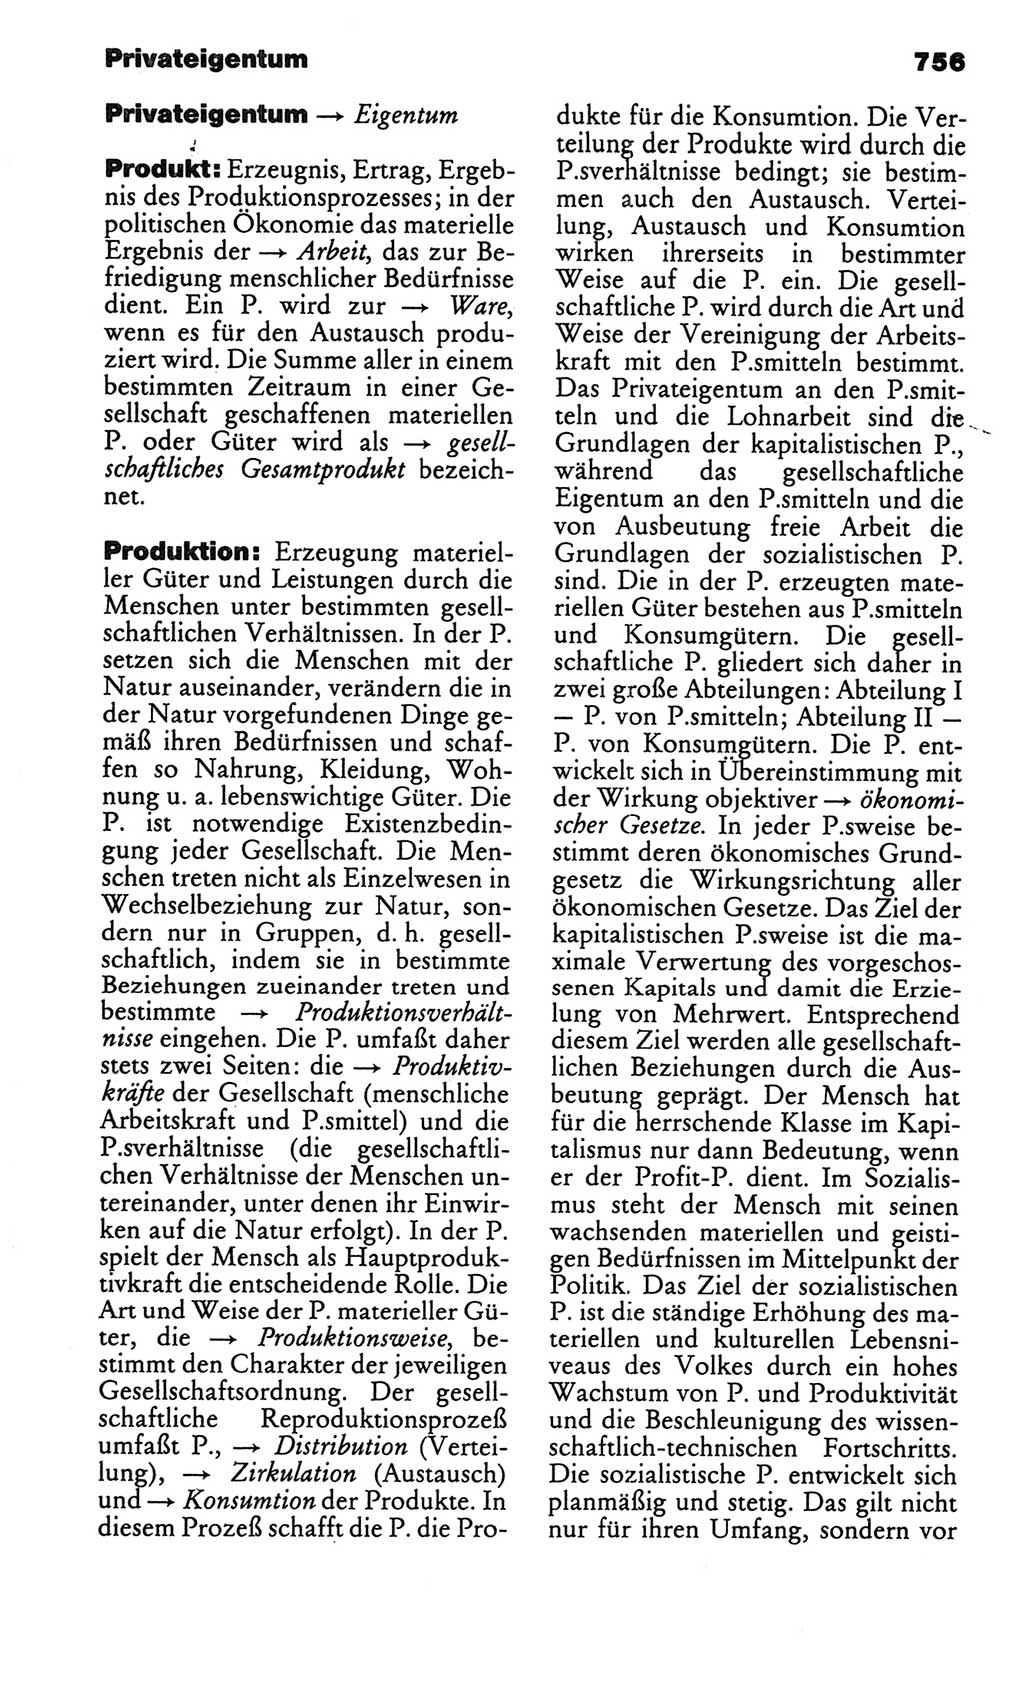 Kleines politisches Wörterbuch [Deutsche Demokratische Republik (DDR)] 1986, Seite 756 (Kl. pol. Wb. DDR 1986, S. 756)